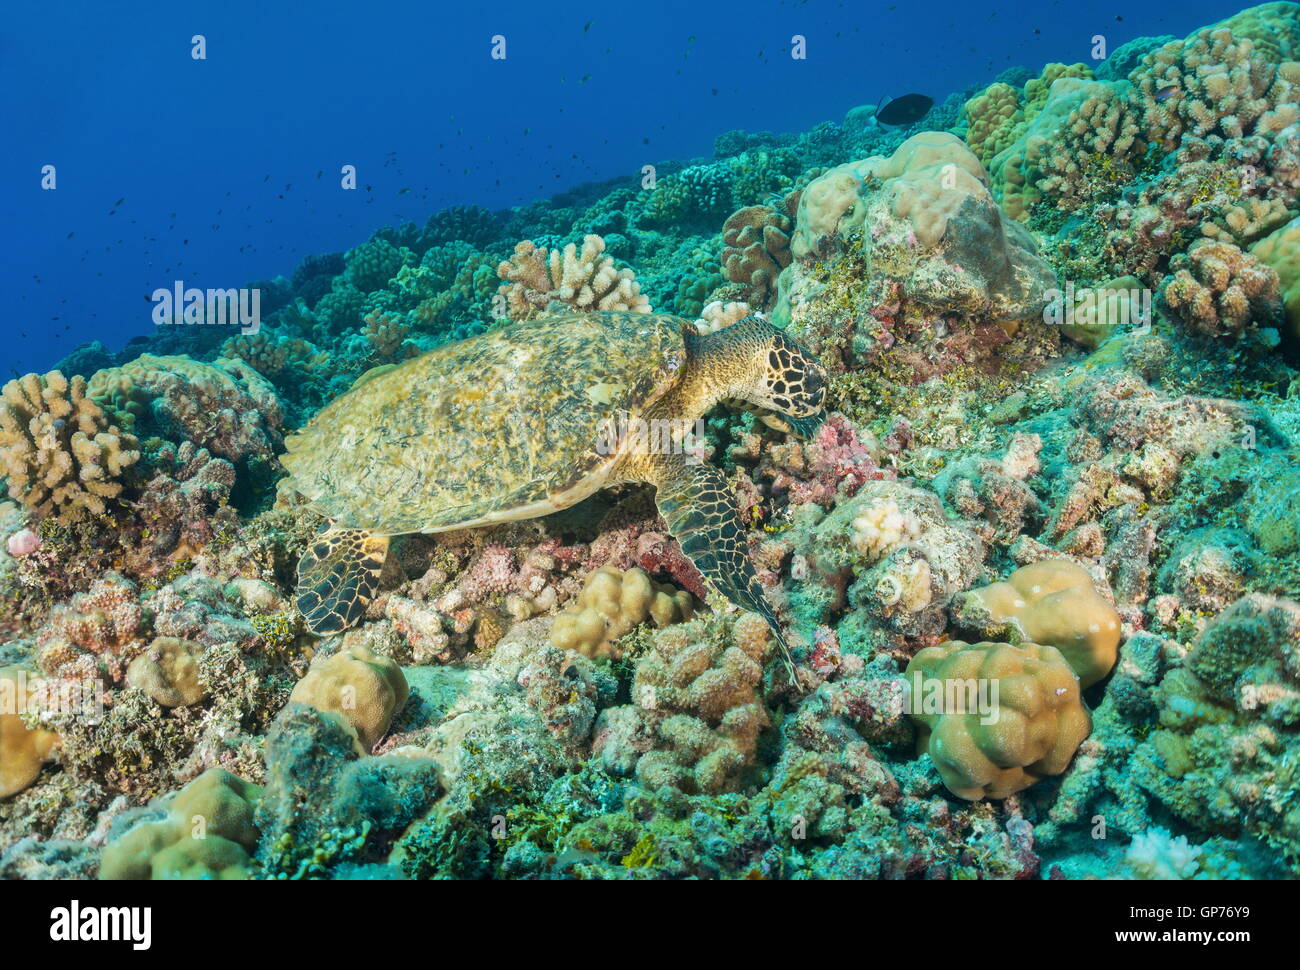 Una tortuga carey, Eretmochelys imbricata, submarino en el suelo oceánico se alimentan en un arrecife de coral, el océano Pacífico, la Polinesia Foto de stock